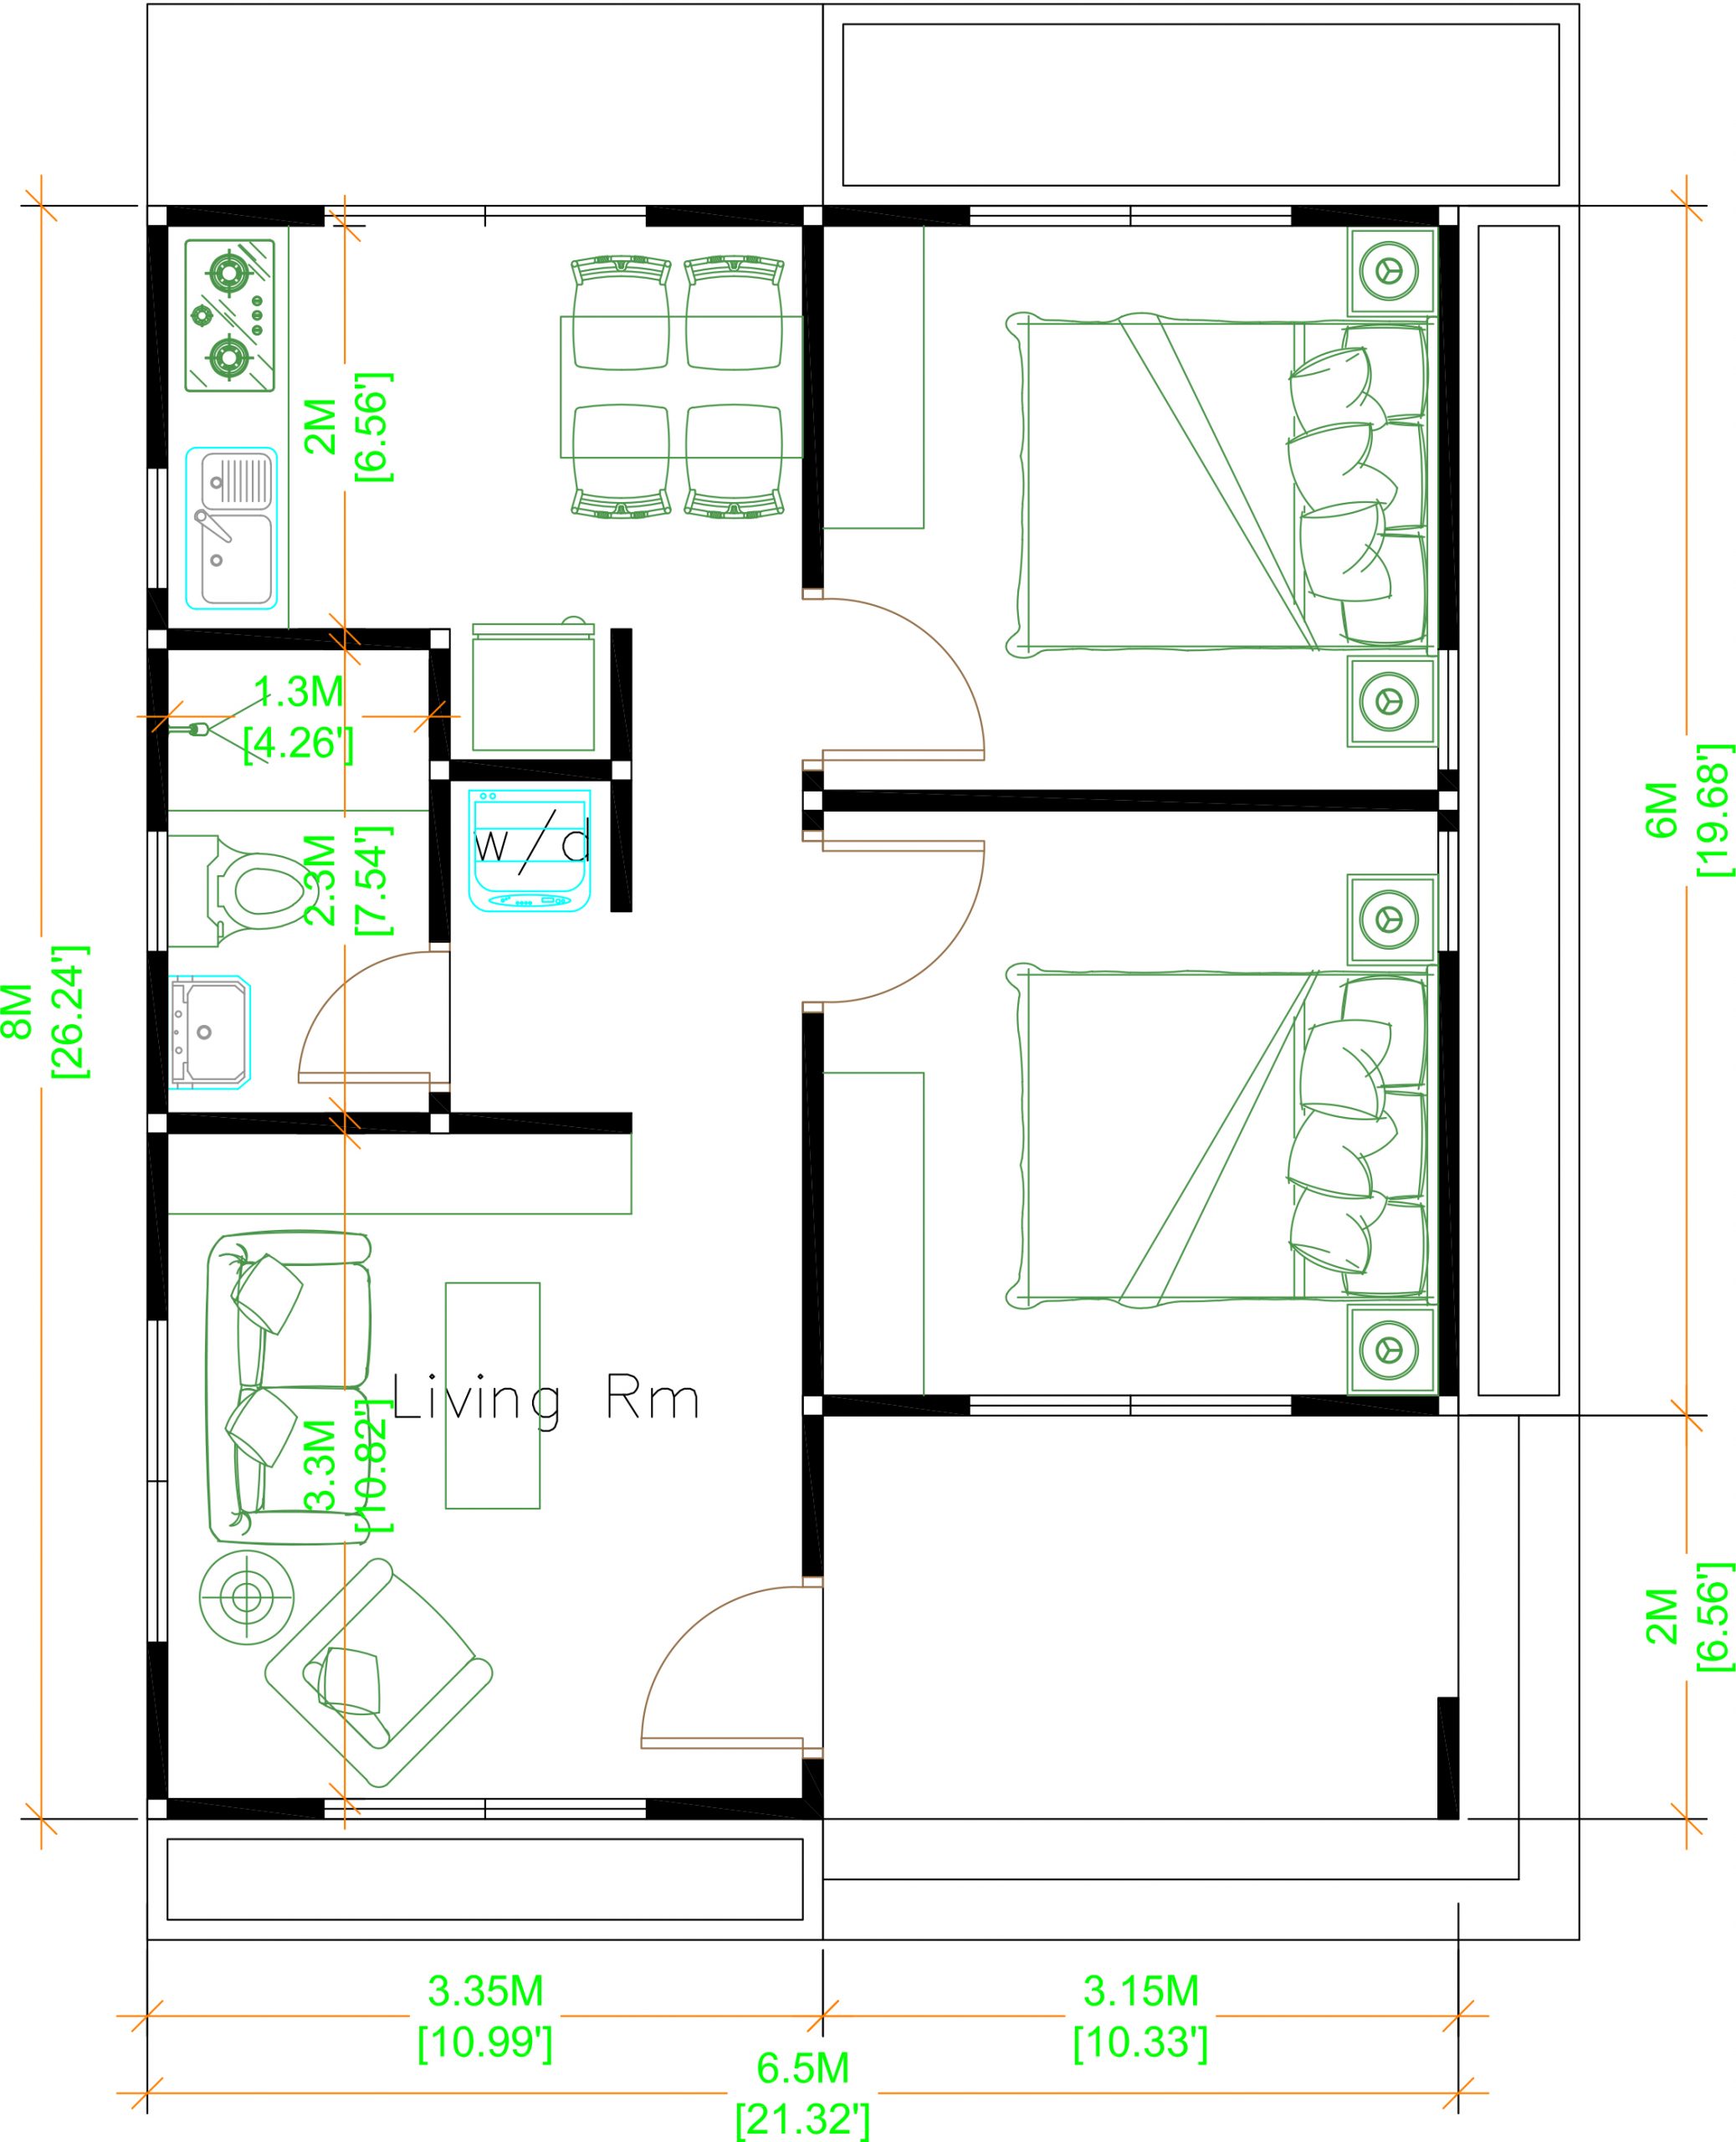 House Design 3d 6.5x8 Meter 21x26 Feet 2 Bedrooms Hip Roof